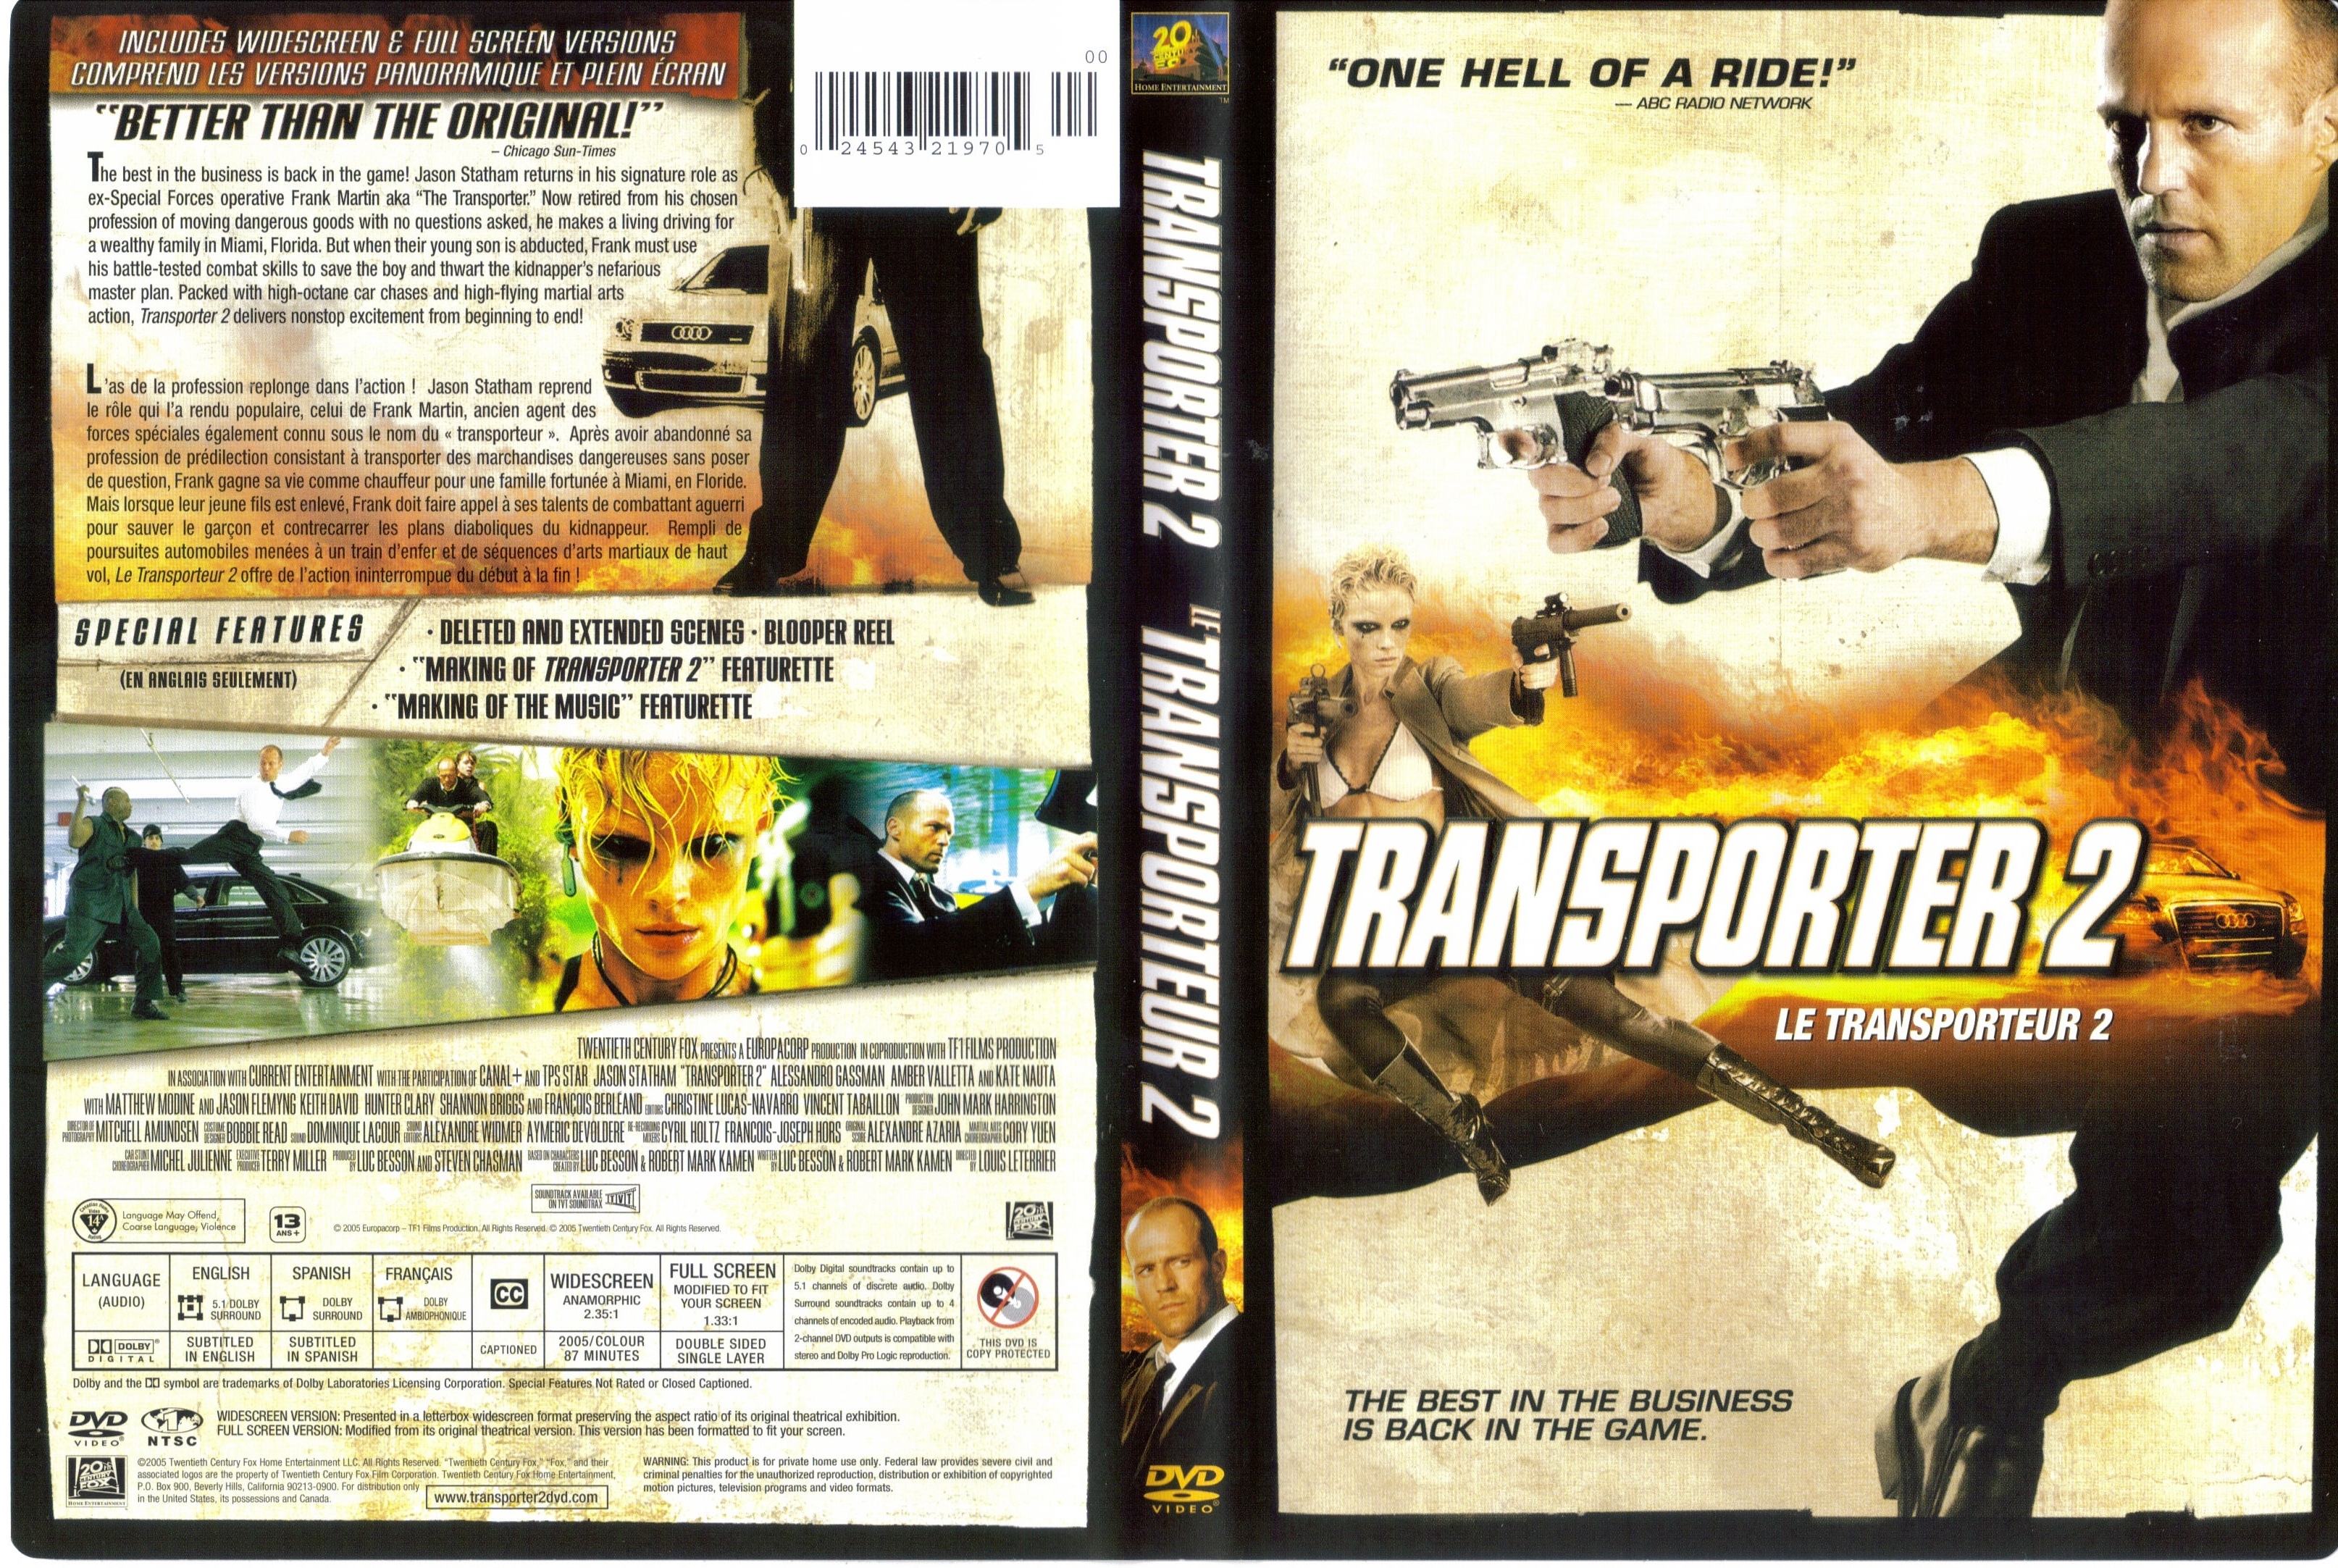 Jaquette DVD The transporter 2 - Le transporteur 2 (canadienne)